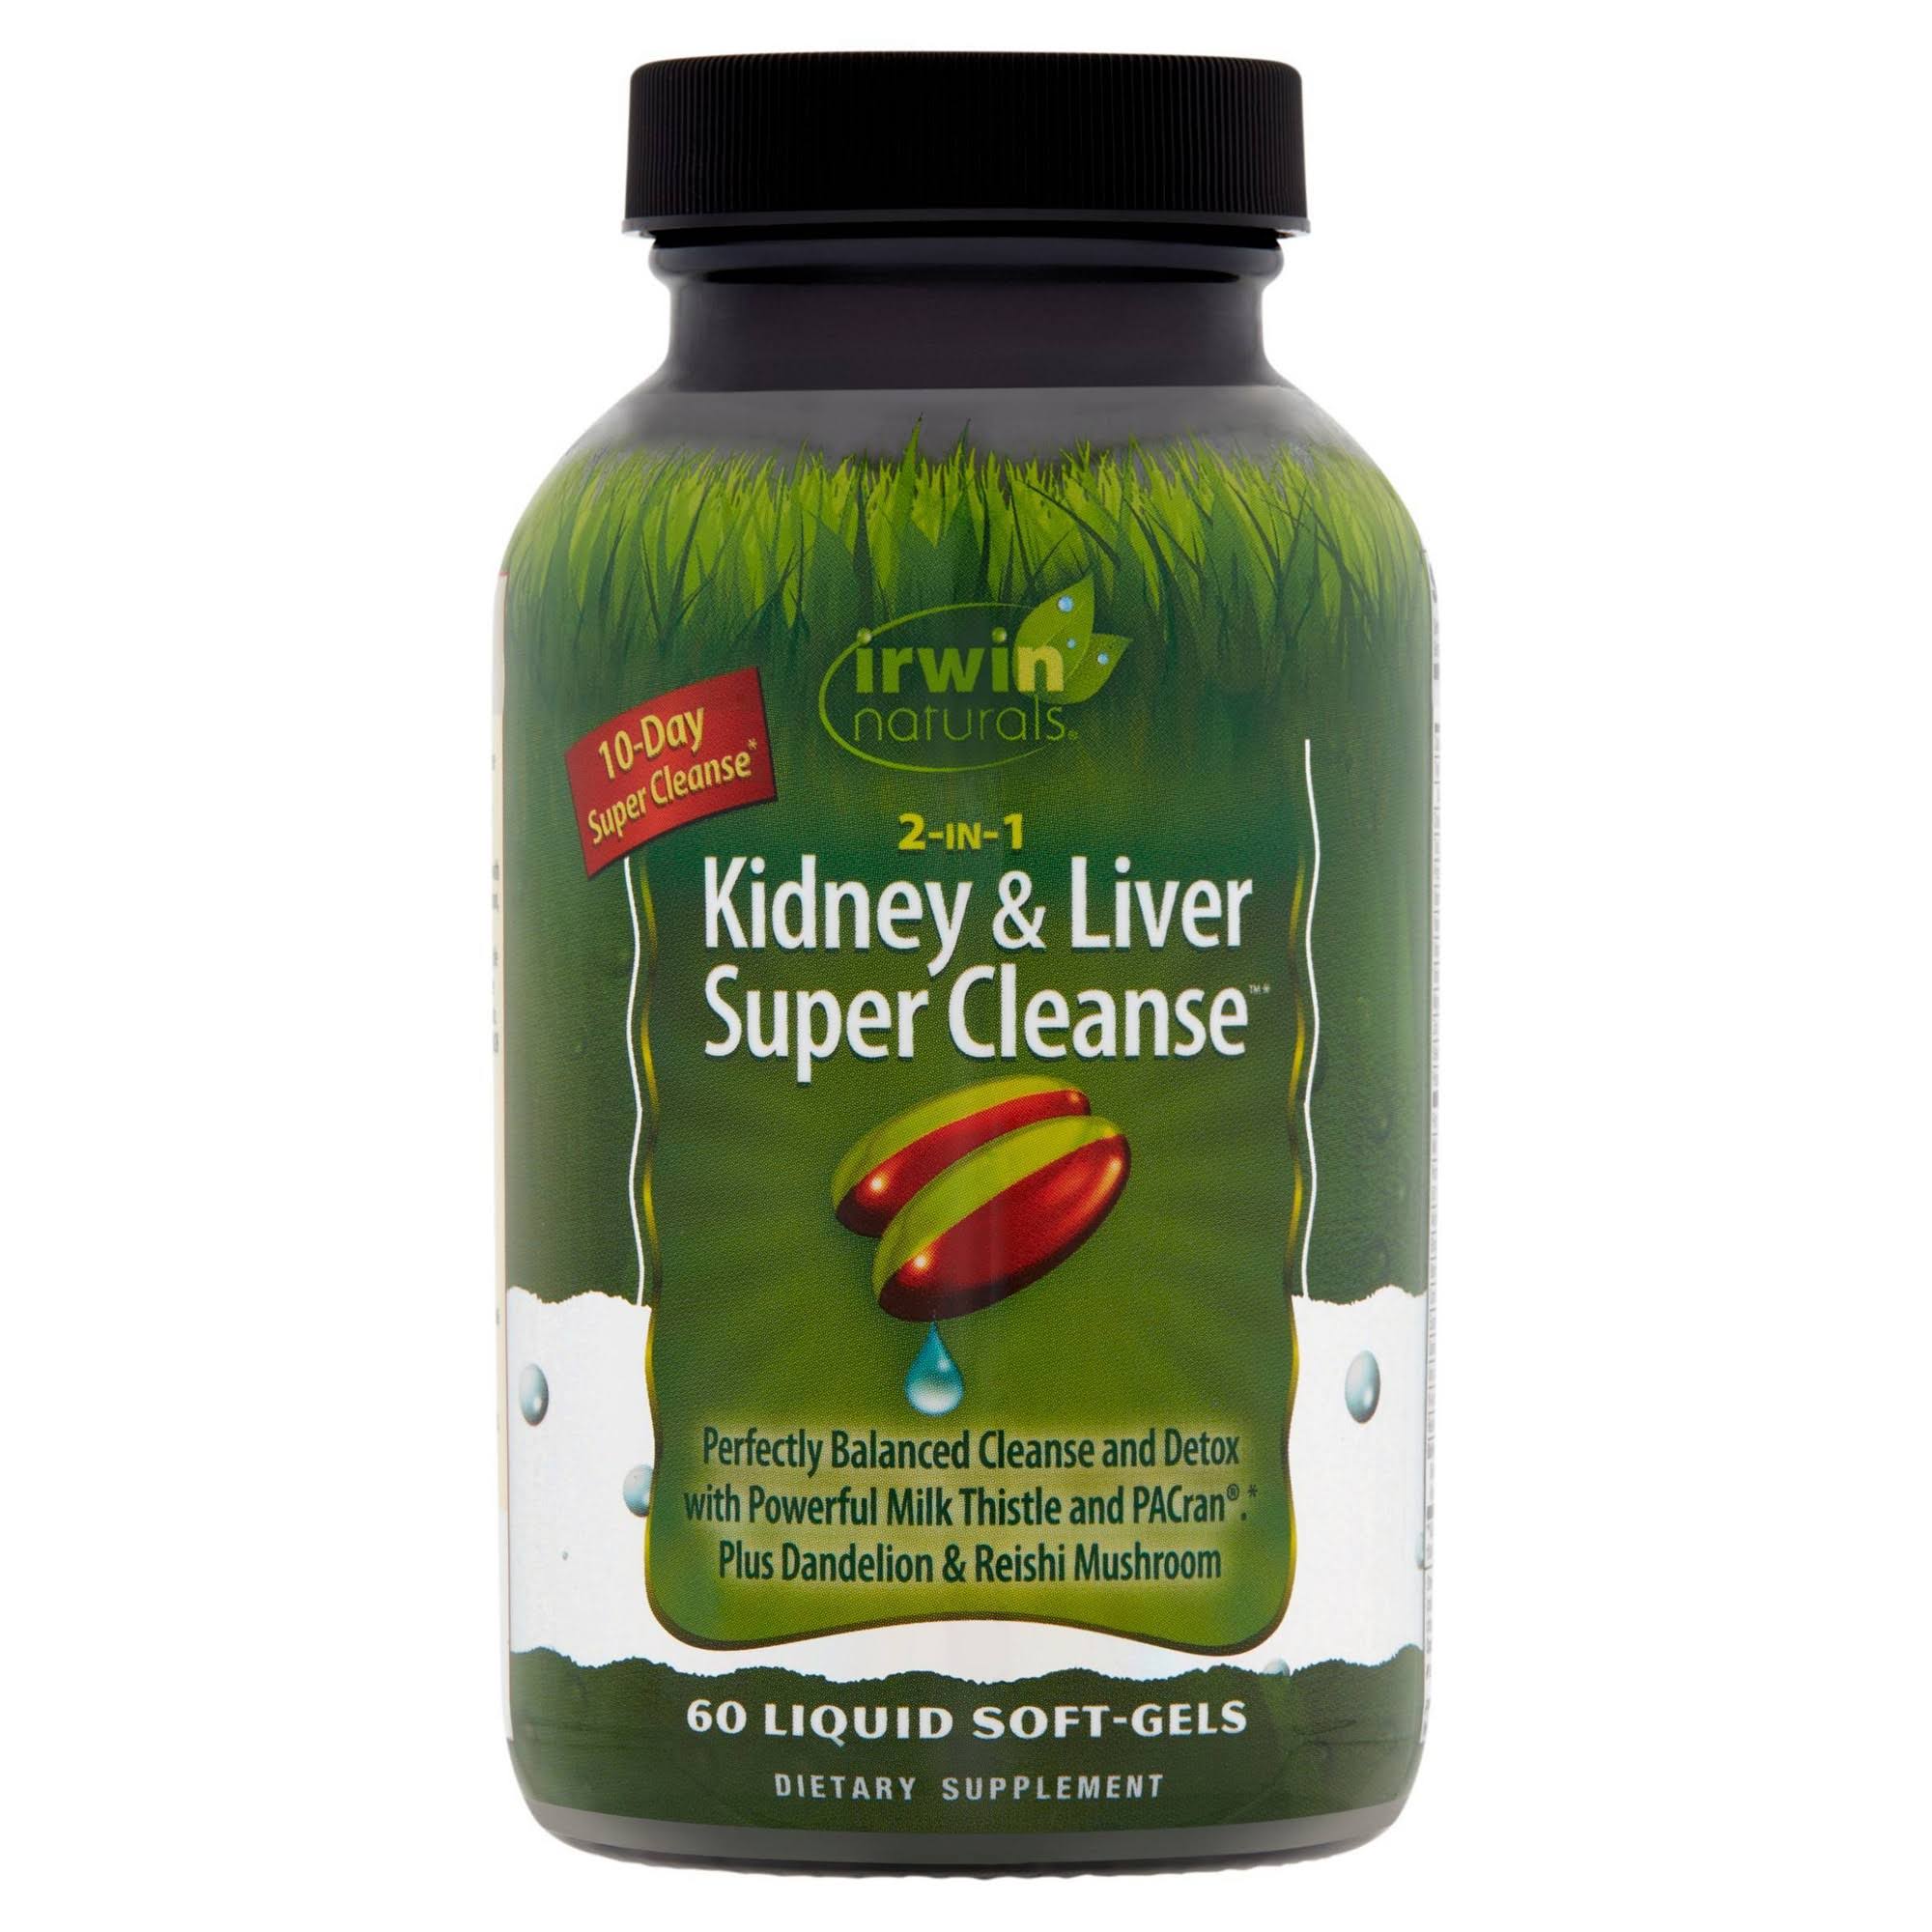 Irwin Naturals 2 in 1 Kidney & Liver Super Cleanse 60 Liquid Soft-Gels